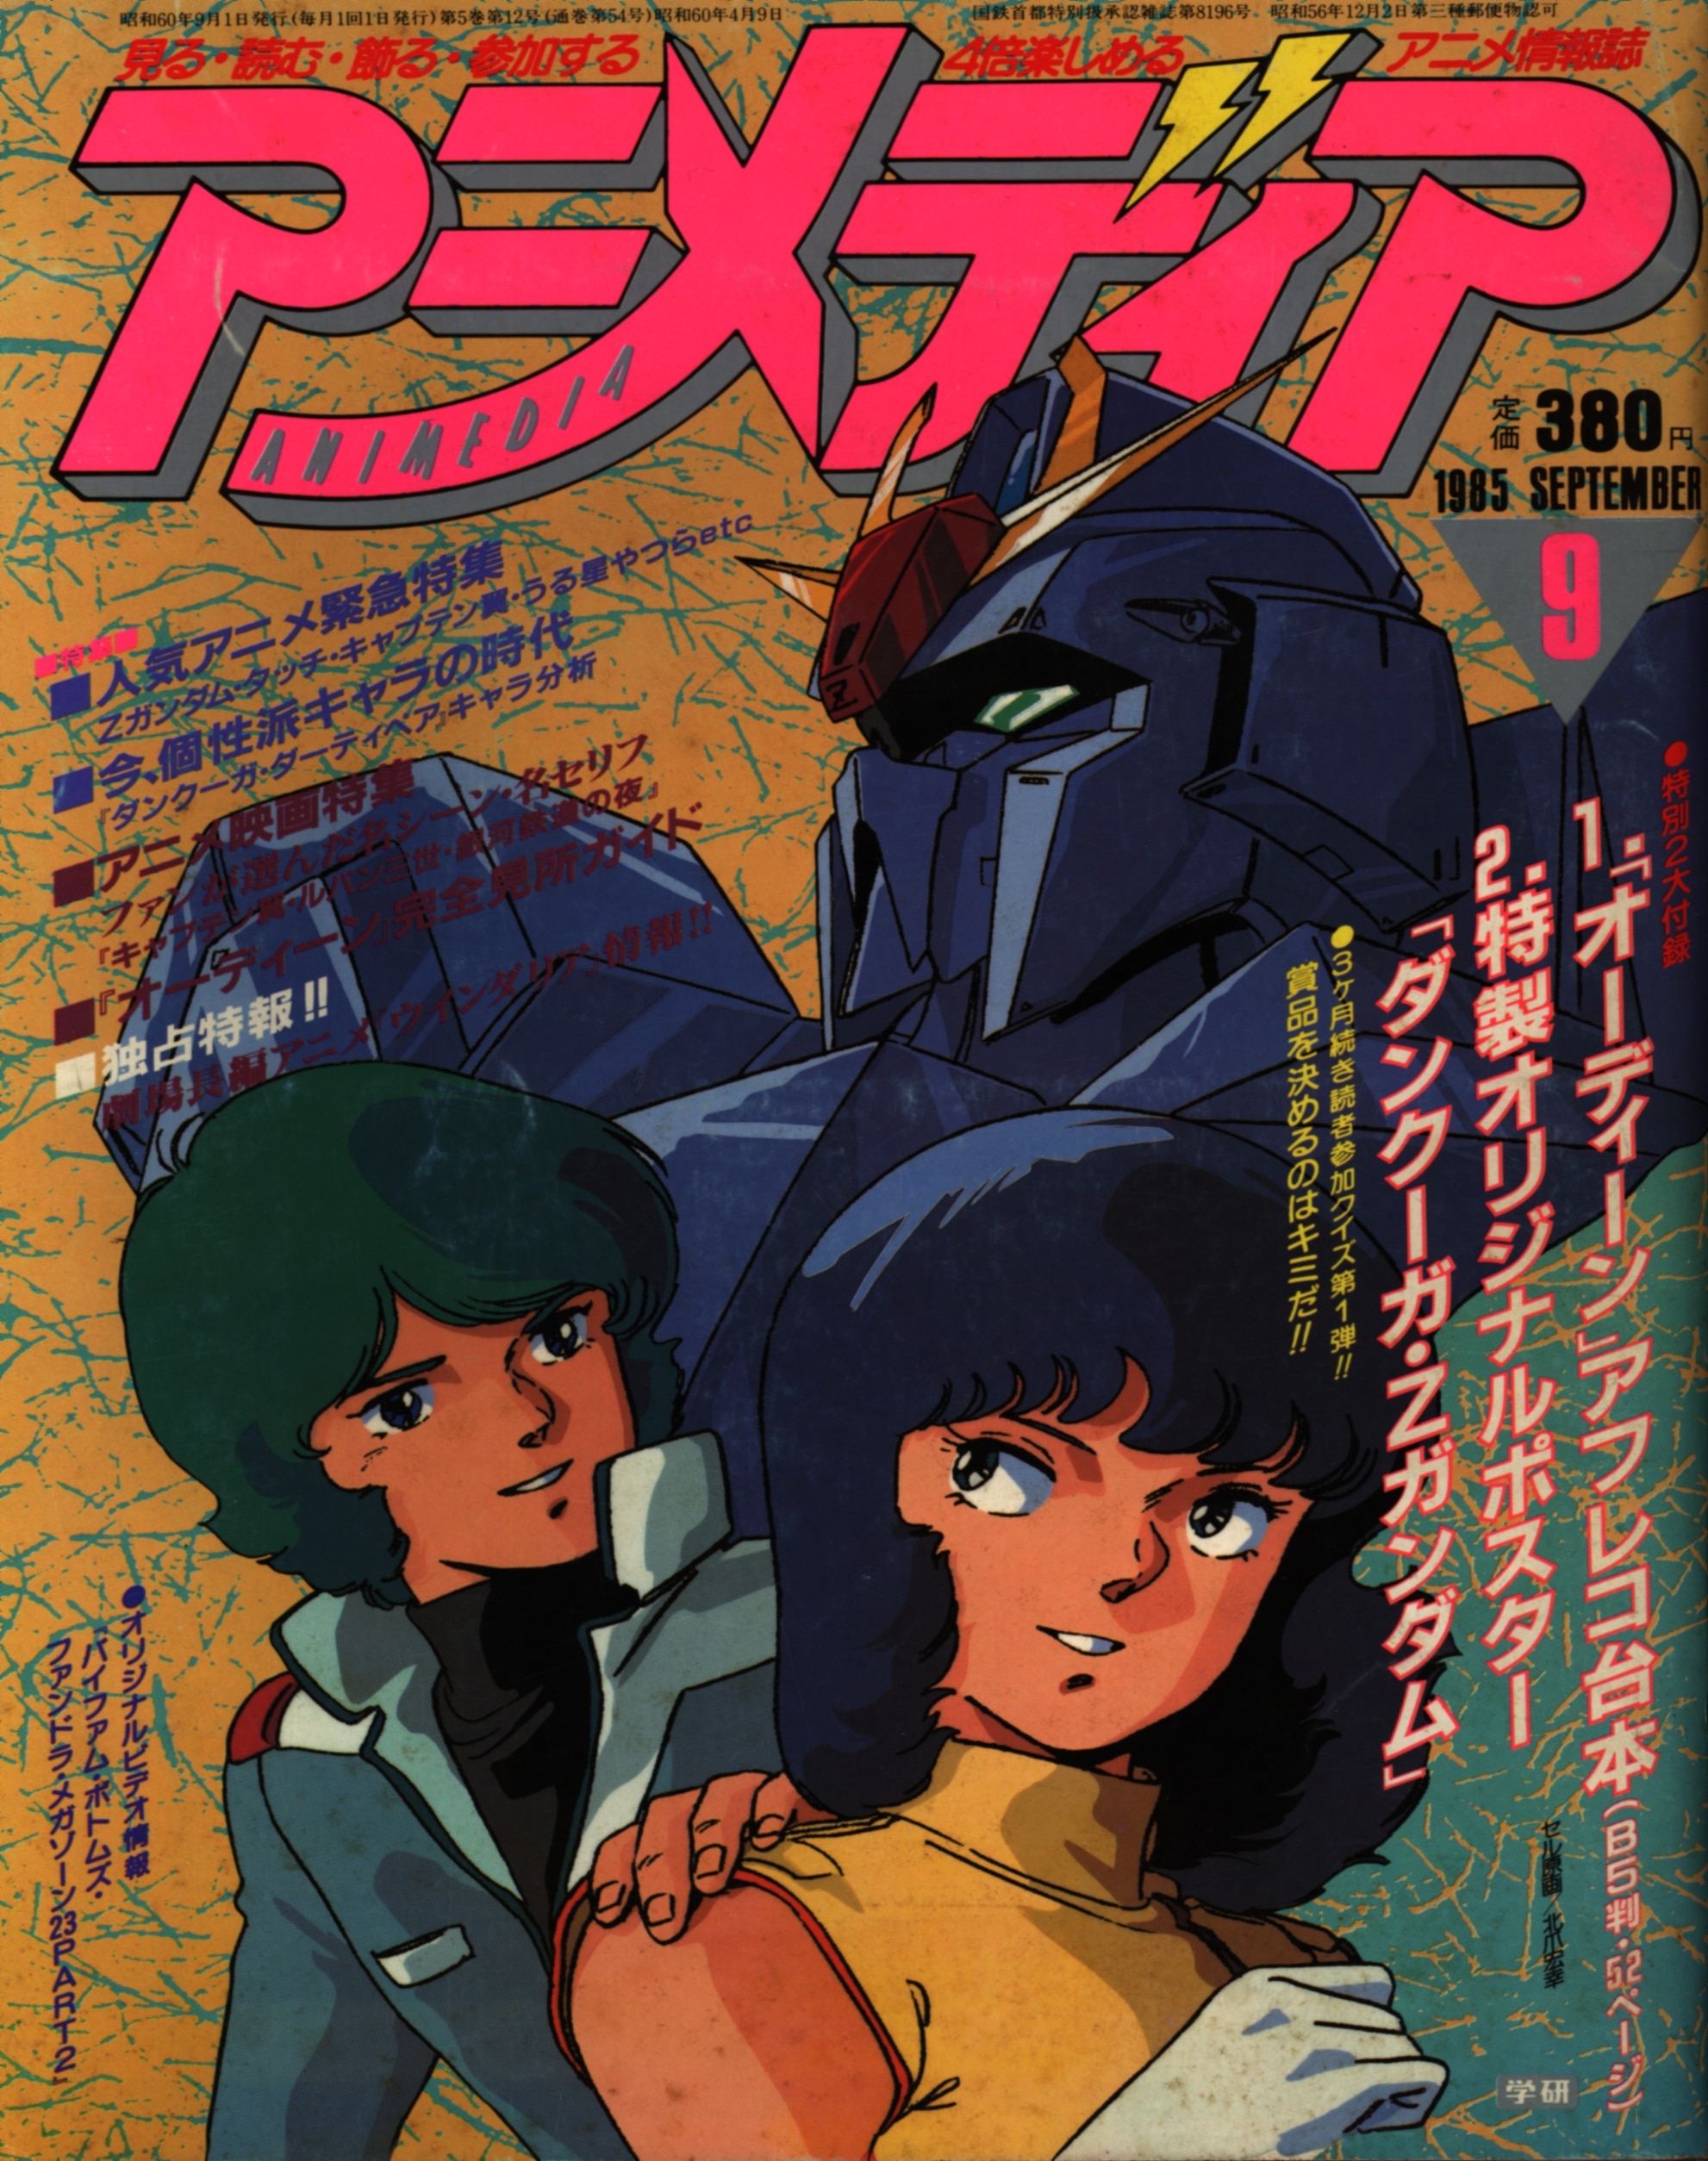 学習研究社 1985年 昭和60年 のアニメ雑誌 本誌のみ アニメディア1985年 昭和60年 9月号 8509 まんだらけ Mandarake